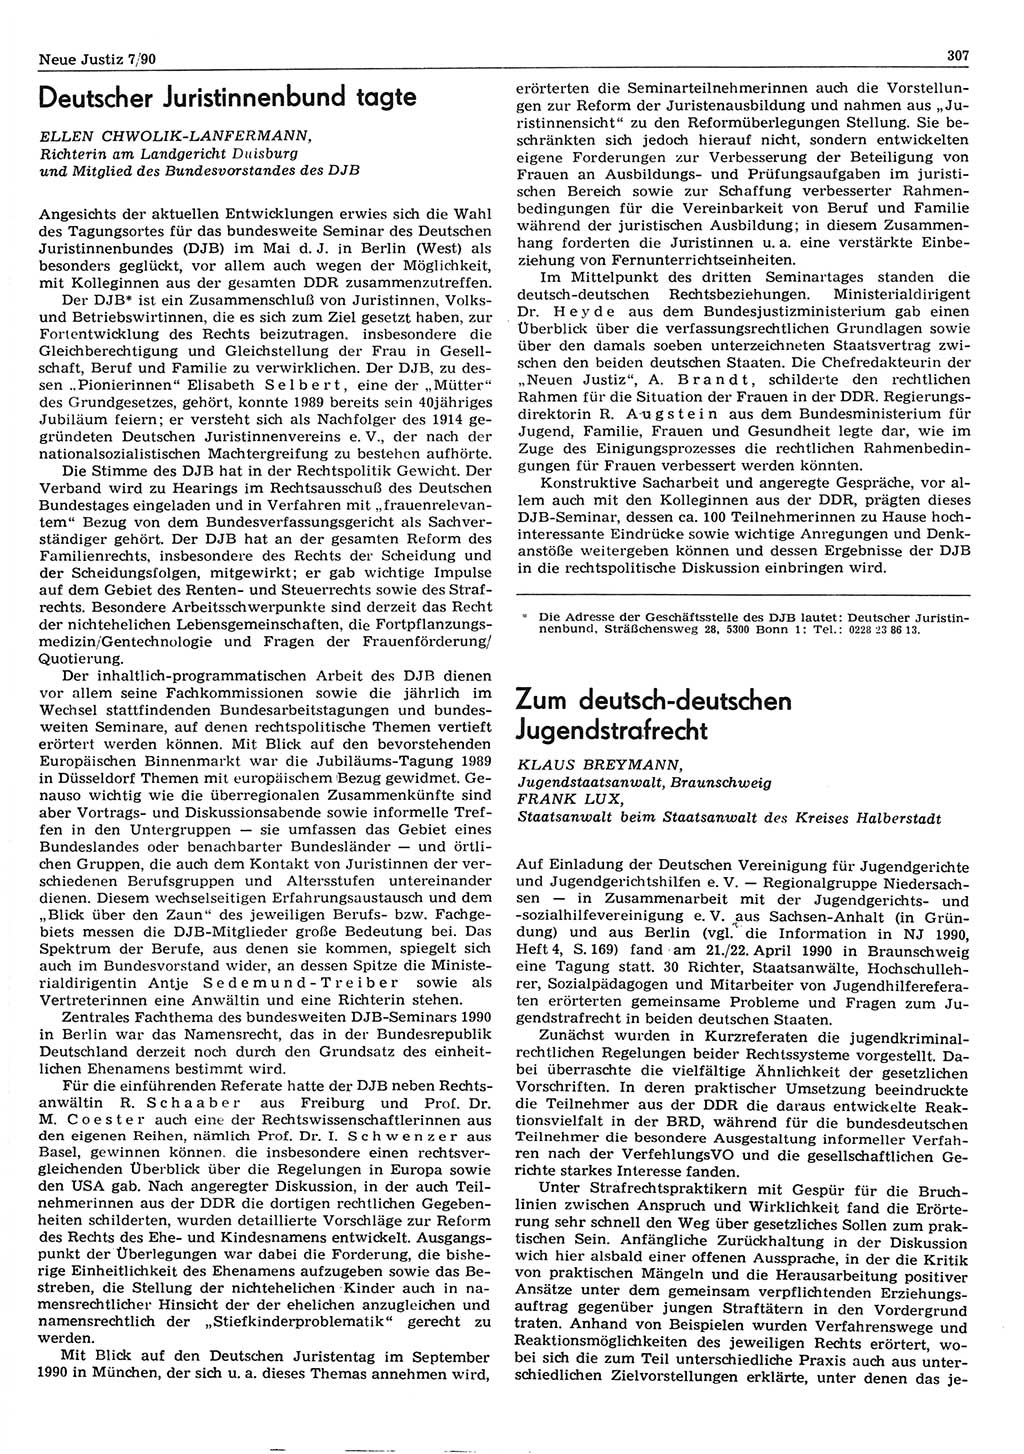 Neue Justiz (NJ), Zeitschrift für Rechtsetzung und Rechtsanwendung [Deutsche Demokratische Republik (DDR)], 44. Jahrgang 1990, Seite 307 (NJ DDR 1990, S. 307)